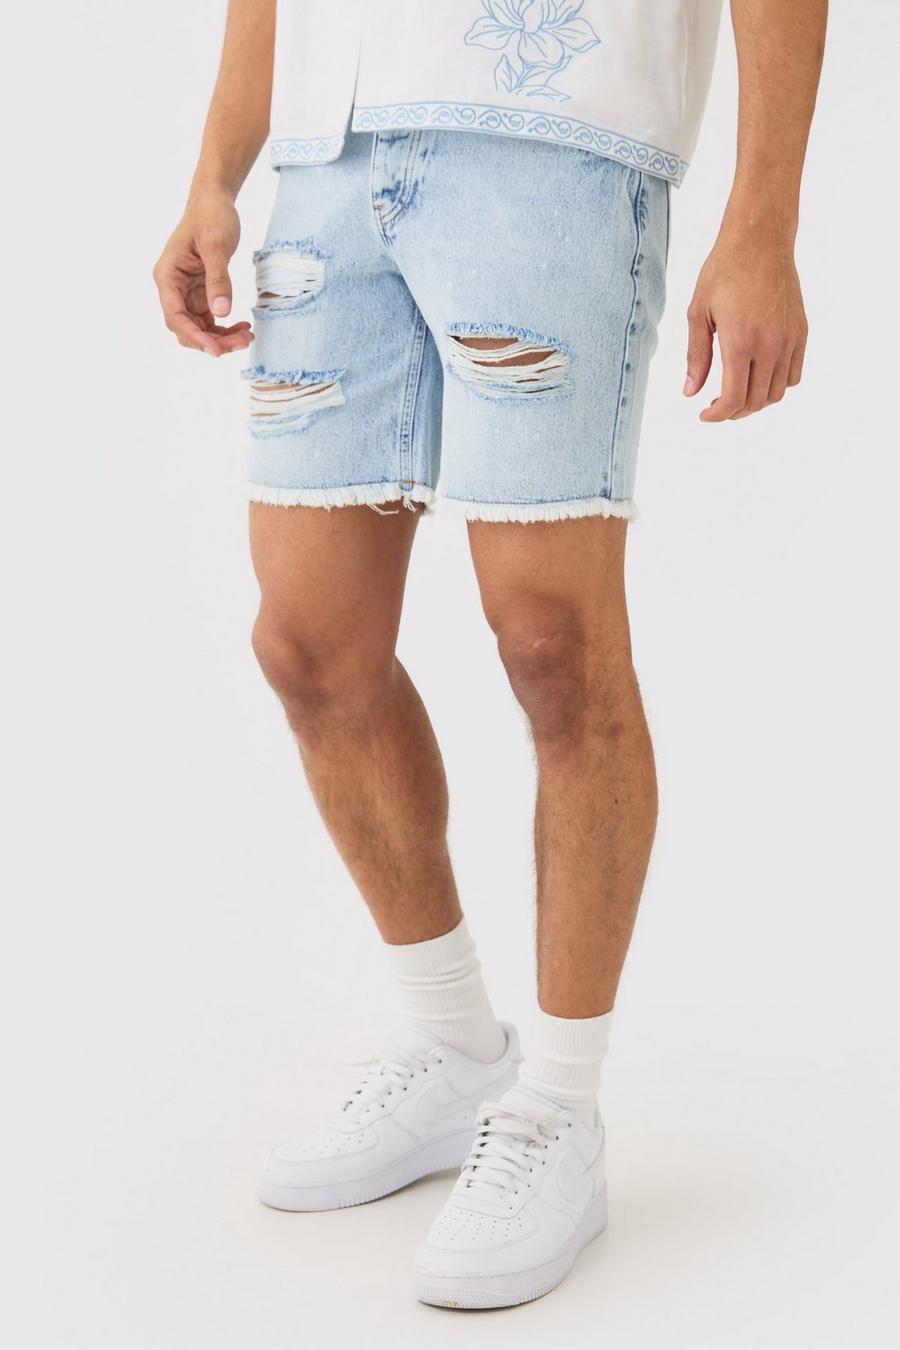 Pantalones cortos vaqueros ajustados sin tratar rotos con salpicaduras de pintura en azul hielo, Ice blue image number 1